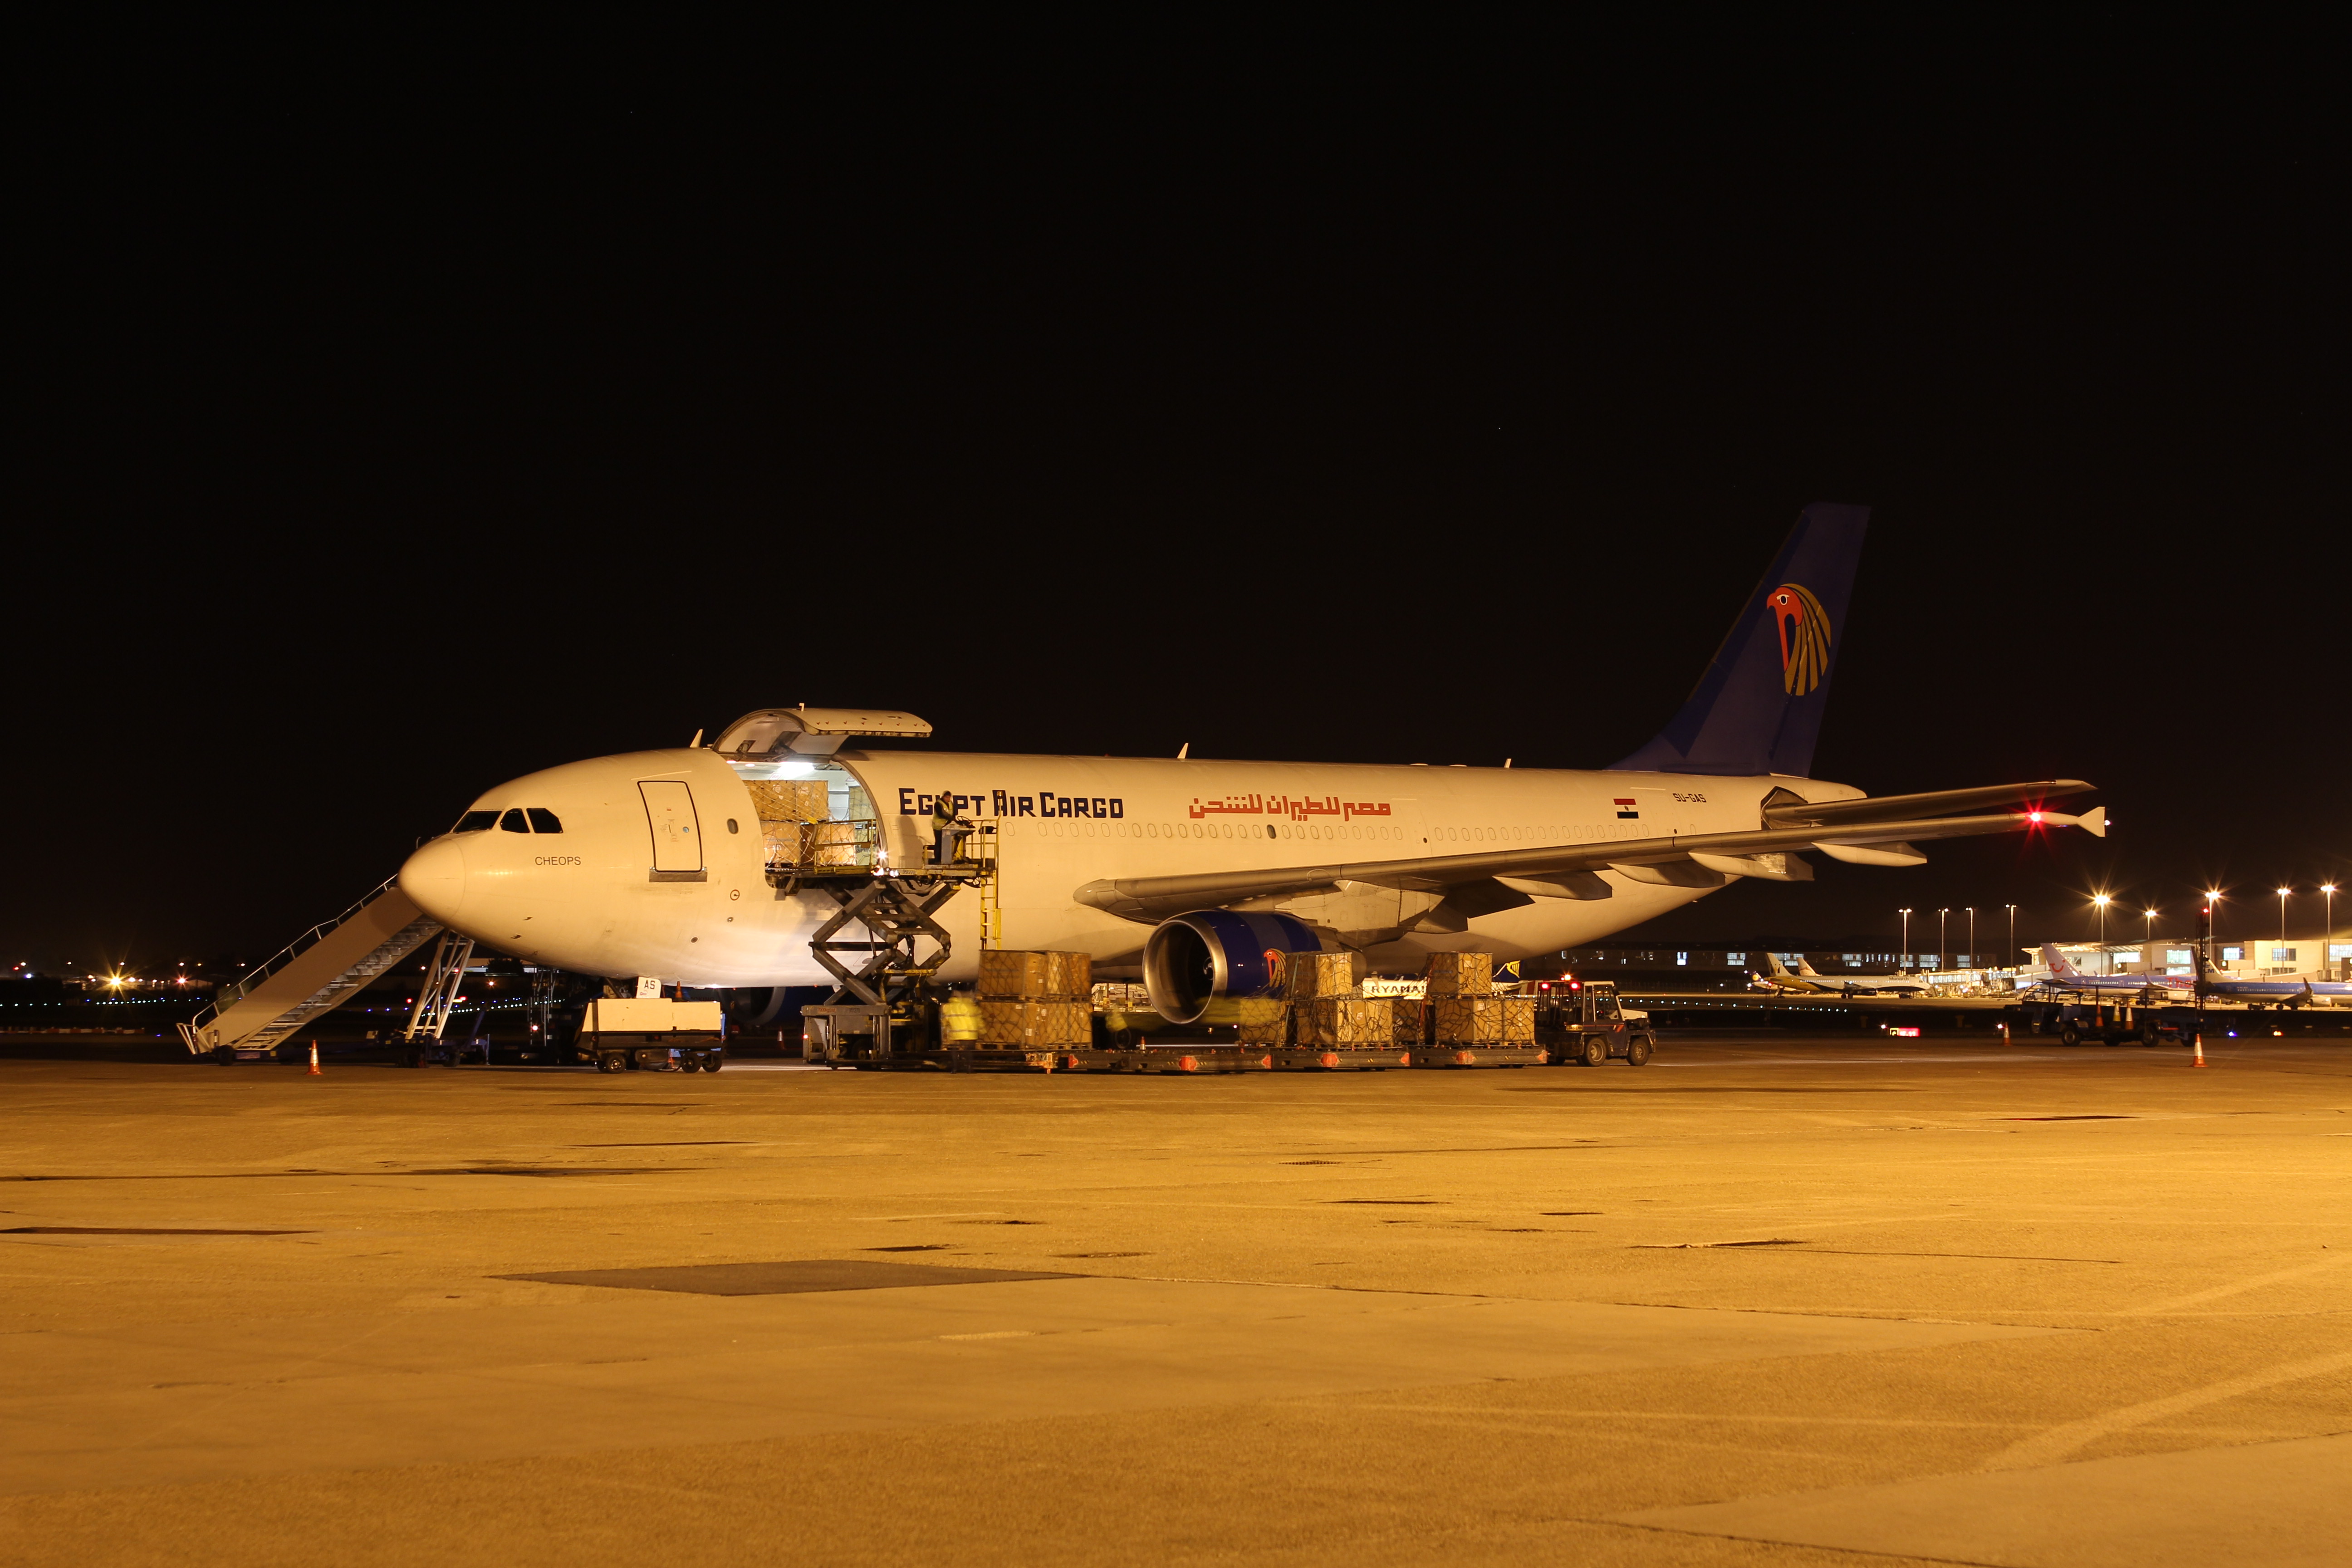 Egypt Air Cargo